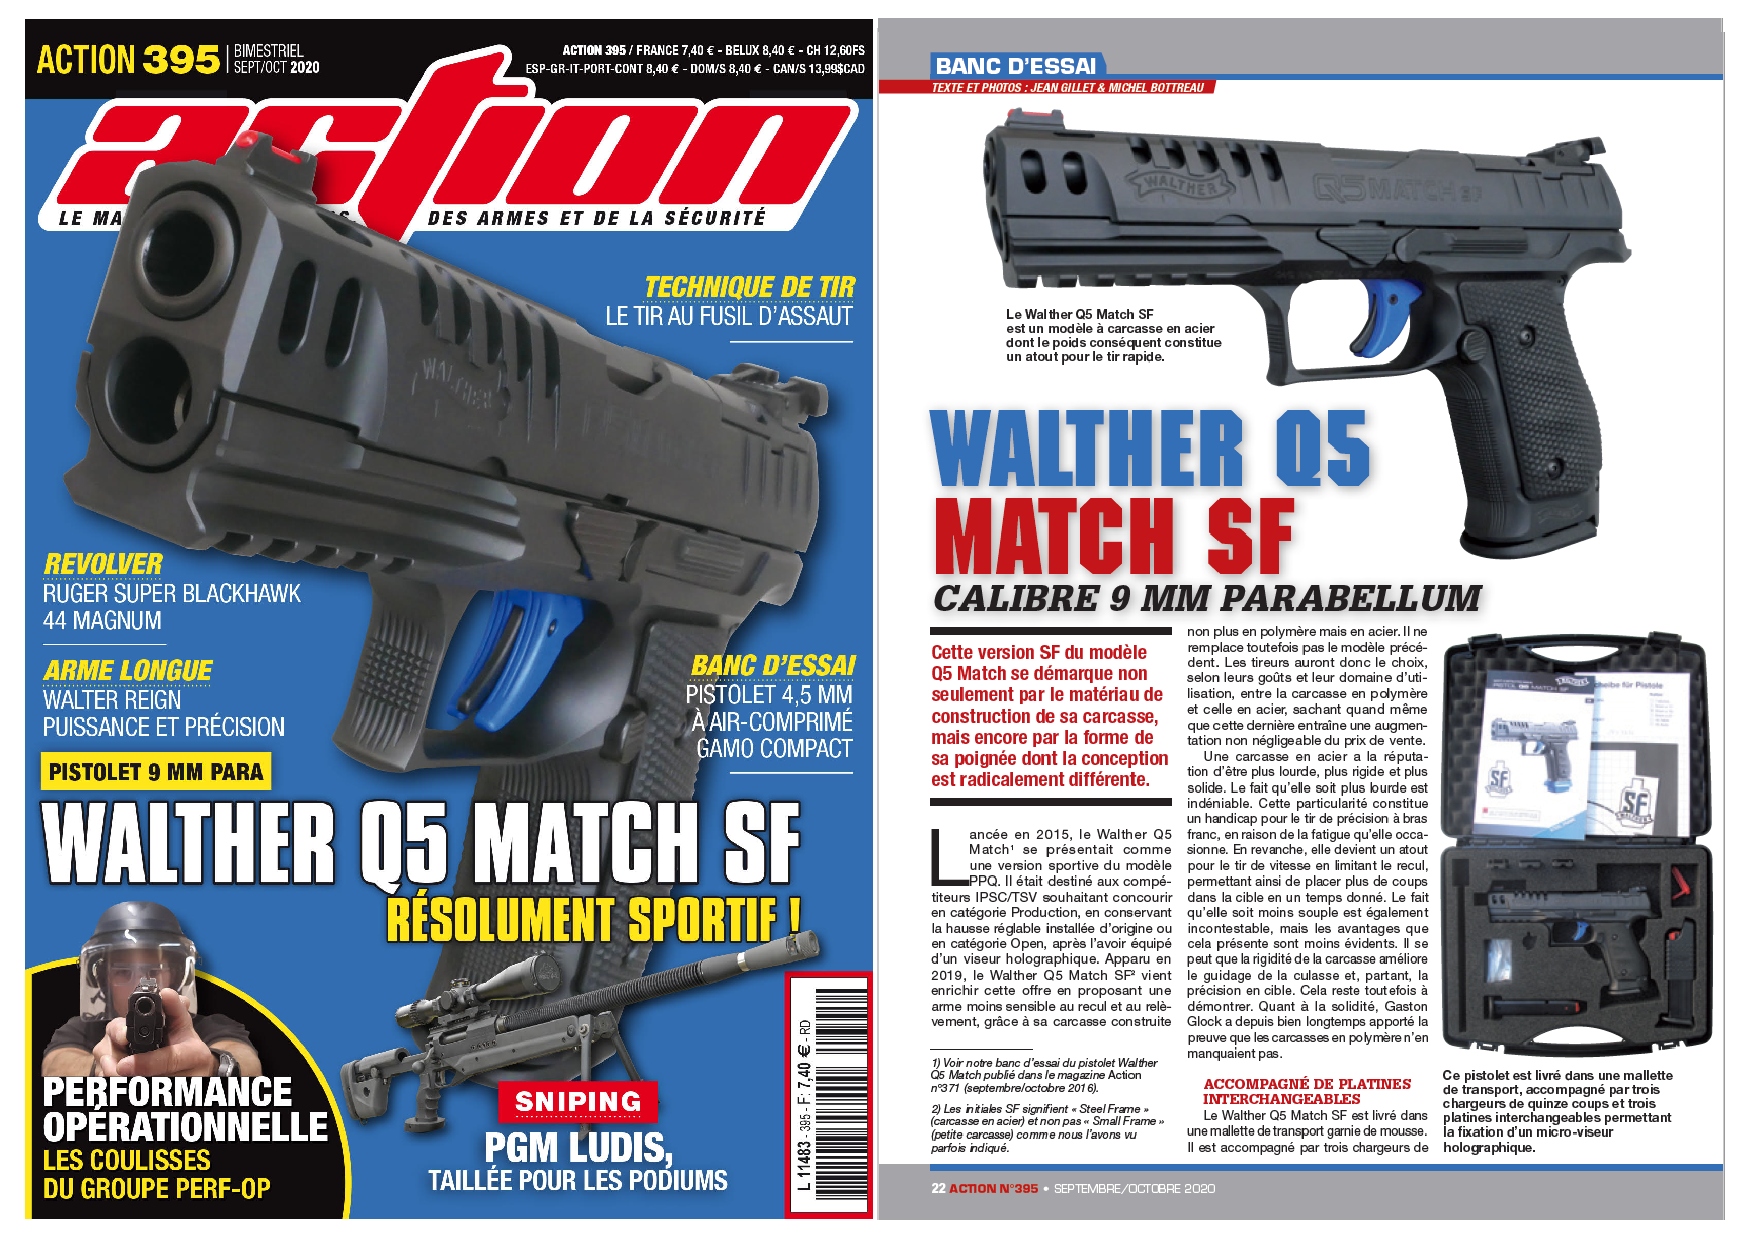 Le banc d’essai du pistolet Walther Q5 Match SF a été publié sur 6 pages dans le magazine Action n°395 (septembre/octobre 2020).